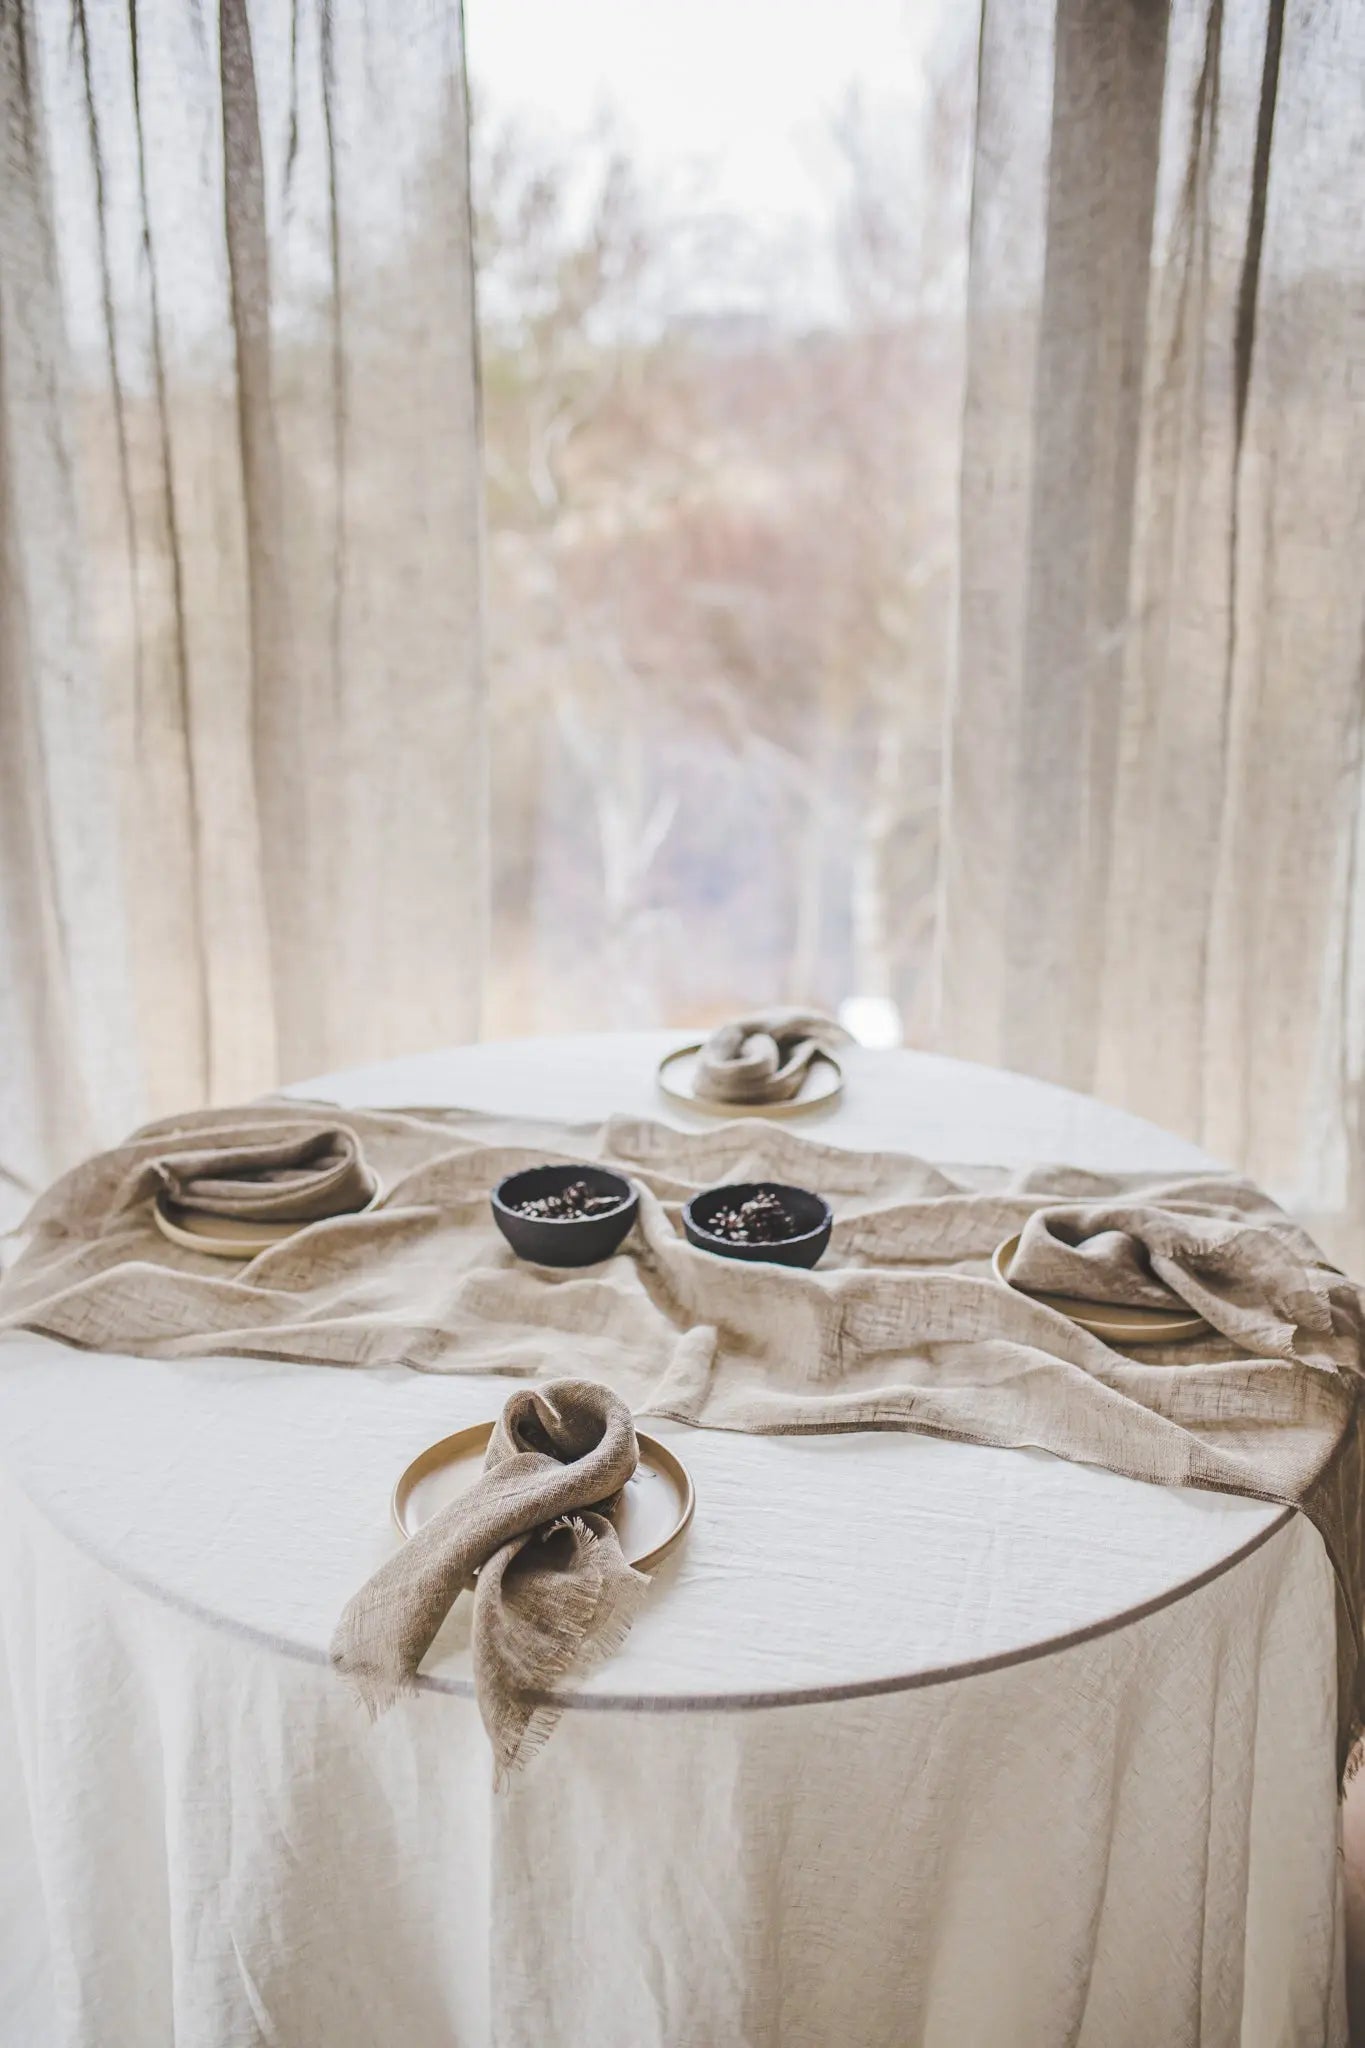 Gauze Linen Table Runner in Beige Natural Flax Color - Epic Linen luxury linen